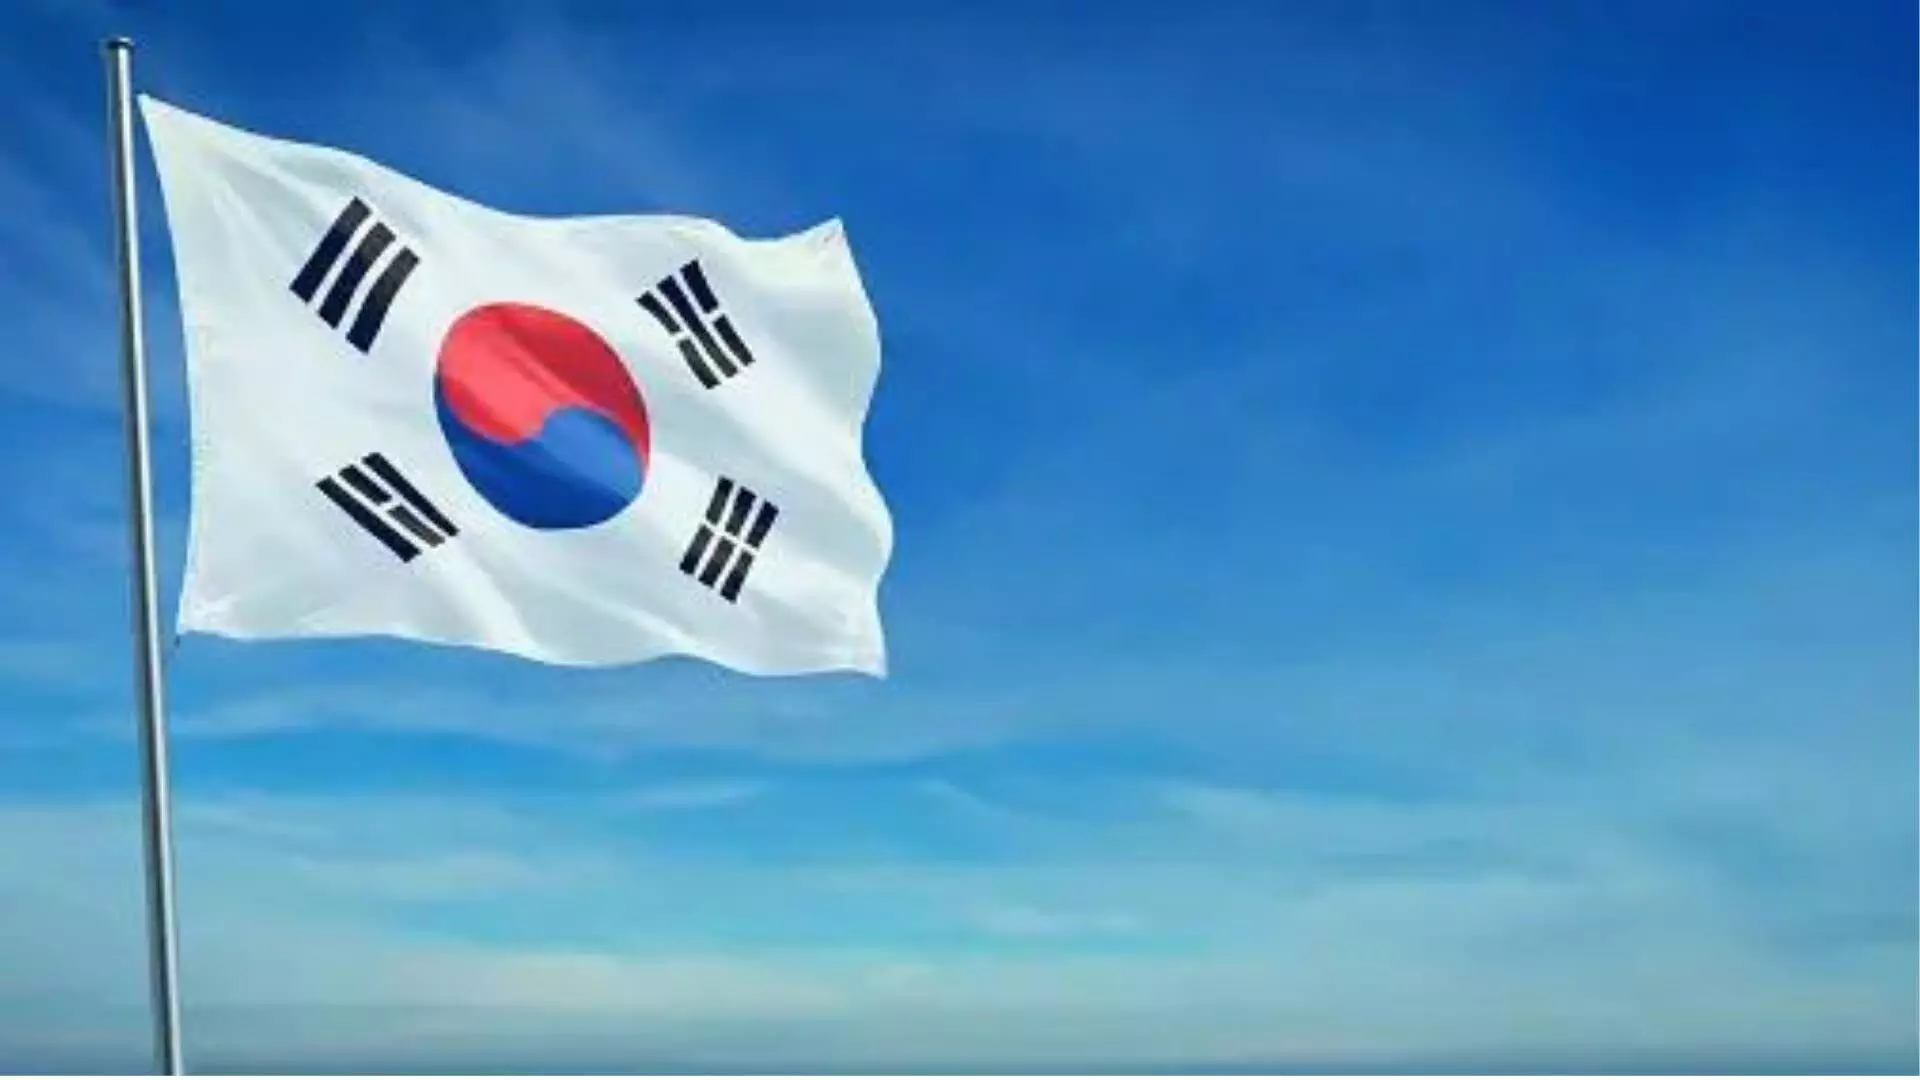 दक्षिण कोरिया आदेश का उल्लंघन करने वाले ट्रेनी डॉक्टरों के लाइसेंस निलंबित करेगा